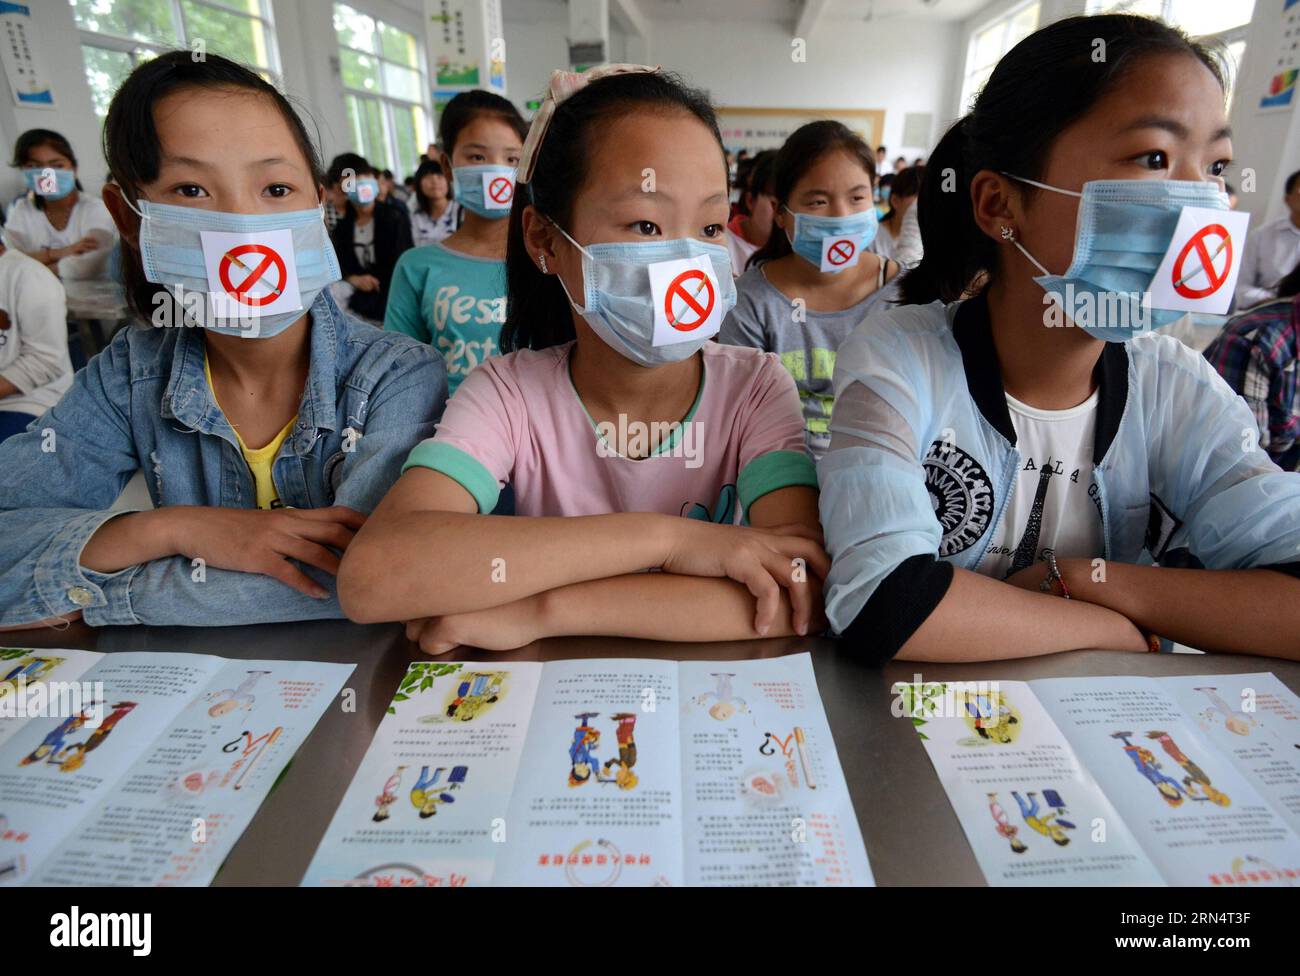 AKTUELLES ZEITGESCHEHEN Weltnichtrauchertag in China (150529) -- FUYANG, 29. Mai 2015 -- Studenten tragen Masken während einer Aktivität zum Welttabak-Tag (WNTD) in Fuyang, ostchinesische Provinz Anhui, 29. Mai 2015. Das WNTD wird jedes Jahr am 31. Mai weltweit beobachtet. (zhs) CHINA-WNTD-ACITIVITY (CN) LuxQijian PUBLICATIONxNOTxINxCHN Nachrichten aktuelle Ereignisse Weltnichttabak-Tag in China 150529 Fuyang Mai 29 2015 Studenten tragen Masken während eines Weltnichttabak-Tages WNTD-Aktivität in Fuyang Ostchina S Anhui Provinz Mai 29 2015 das WNTD WIRD jedes Jahr AUF der ganzen Welt beobachtet Mai 31 zhs China WNT Stockfoto